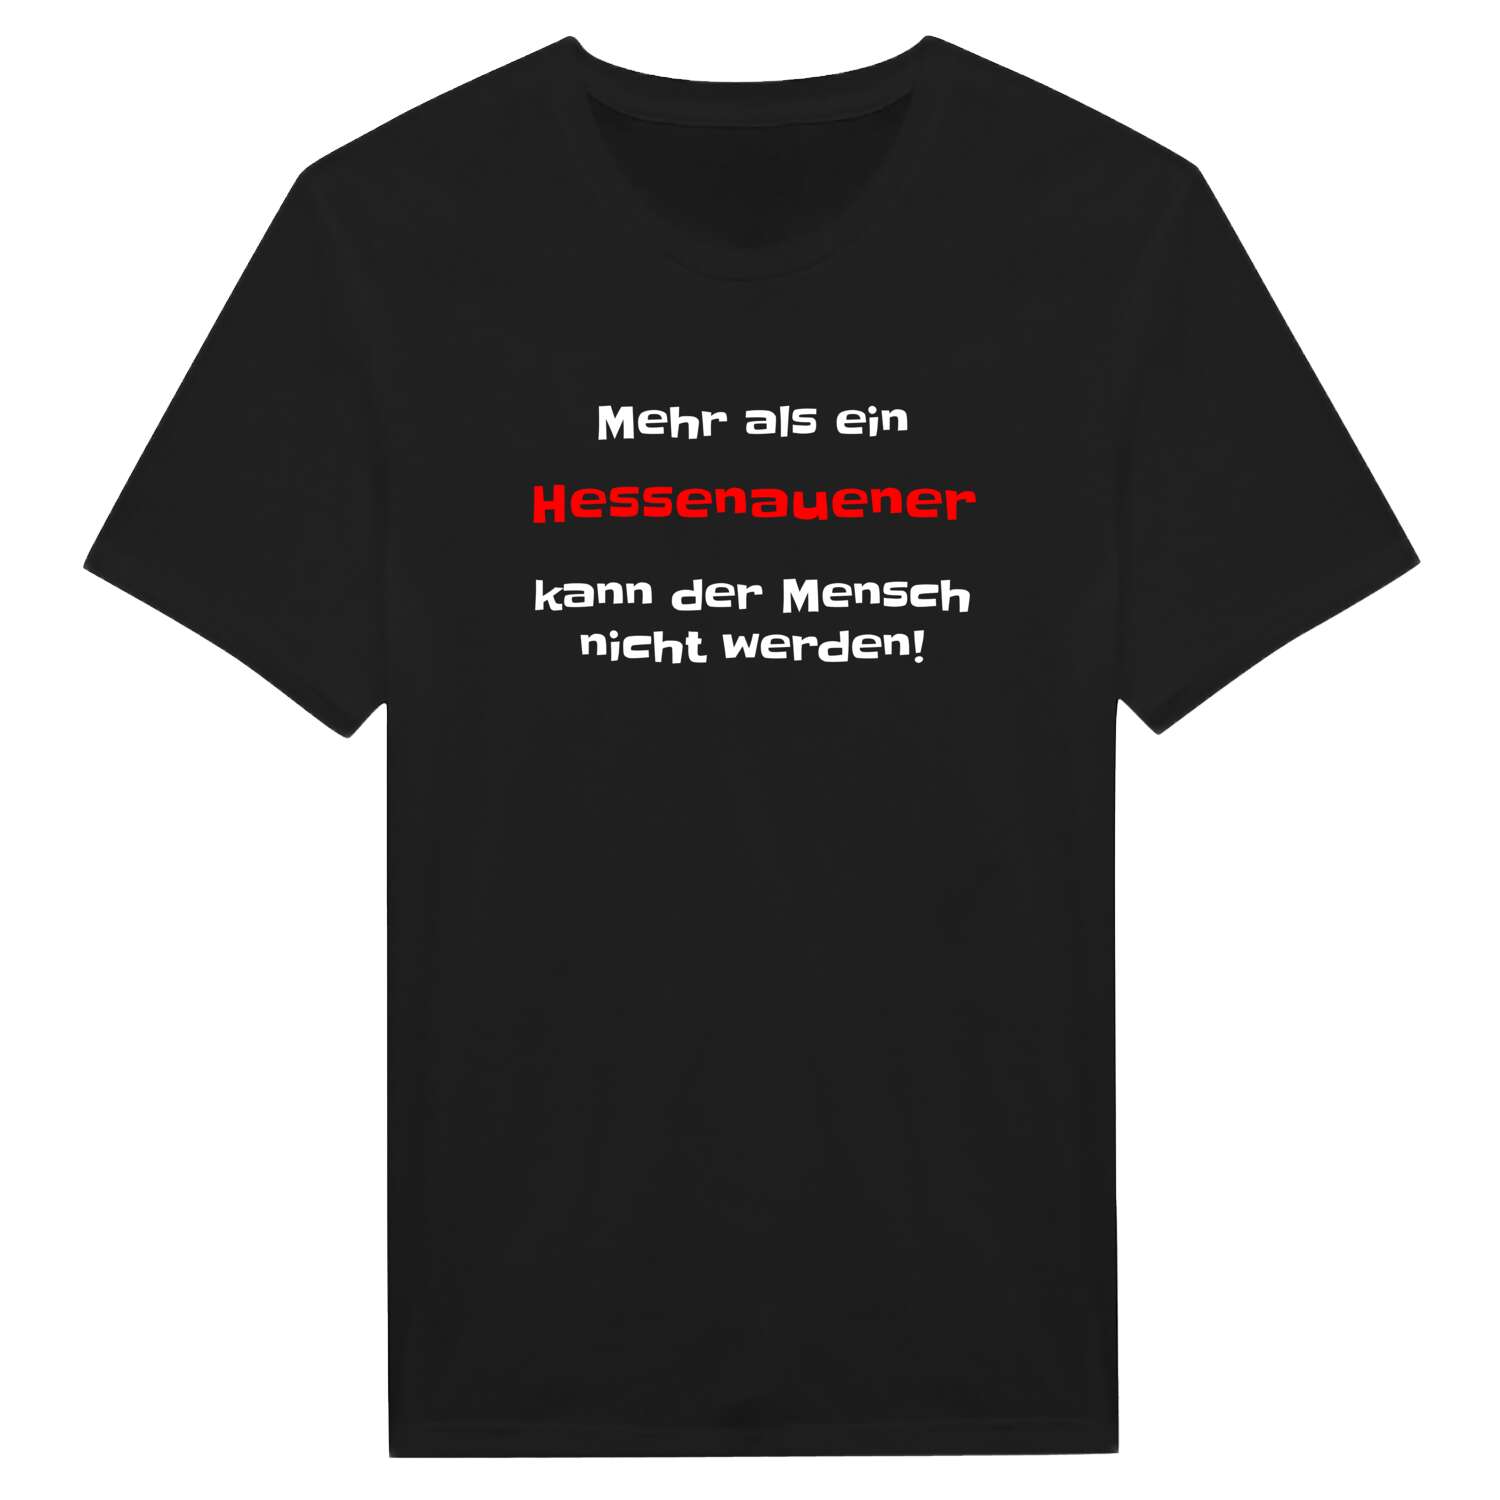 Hessenaue T-Shirt »Mehr als ein«